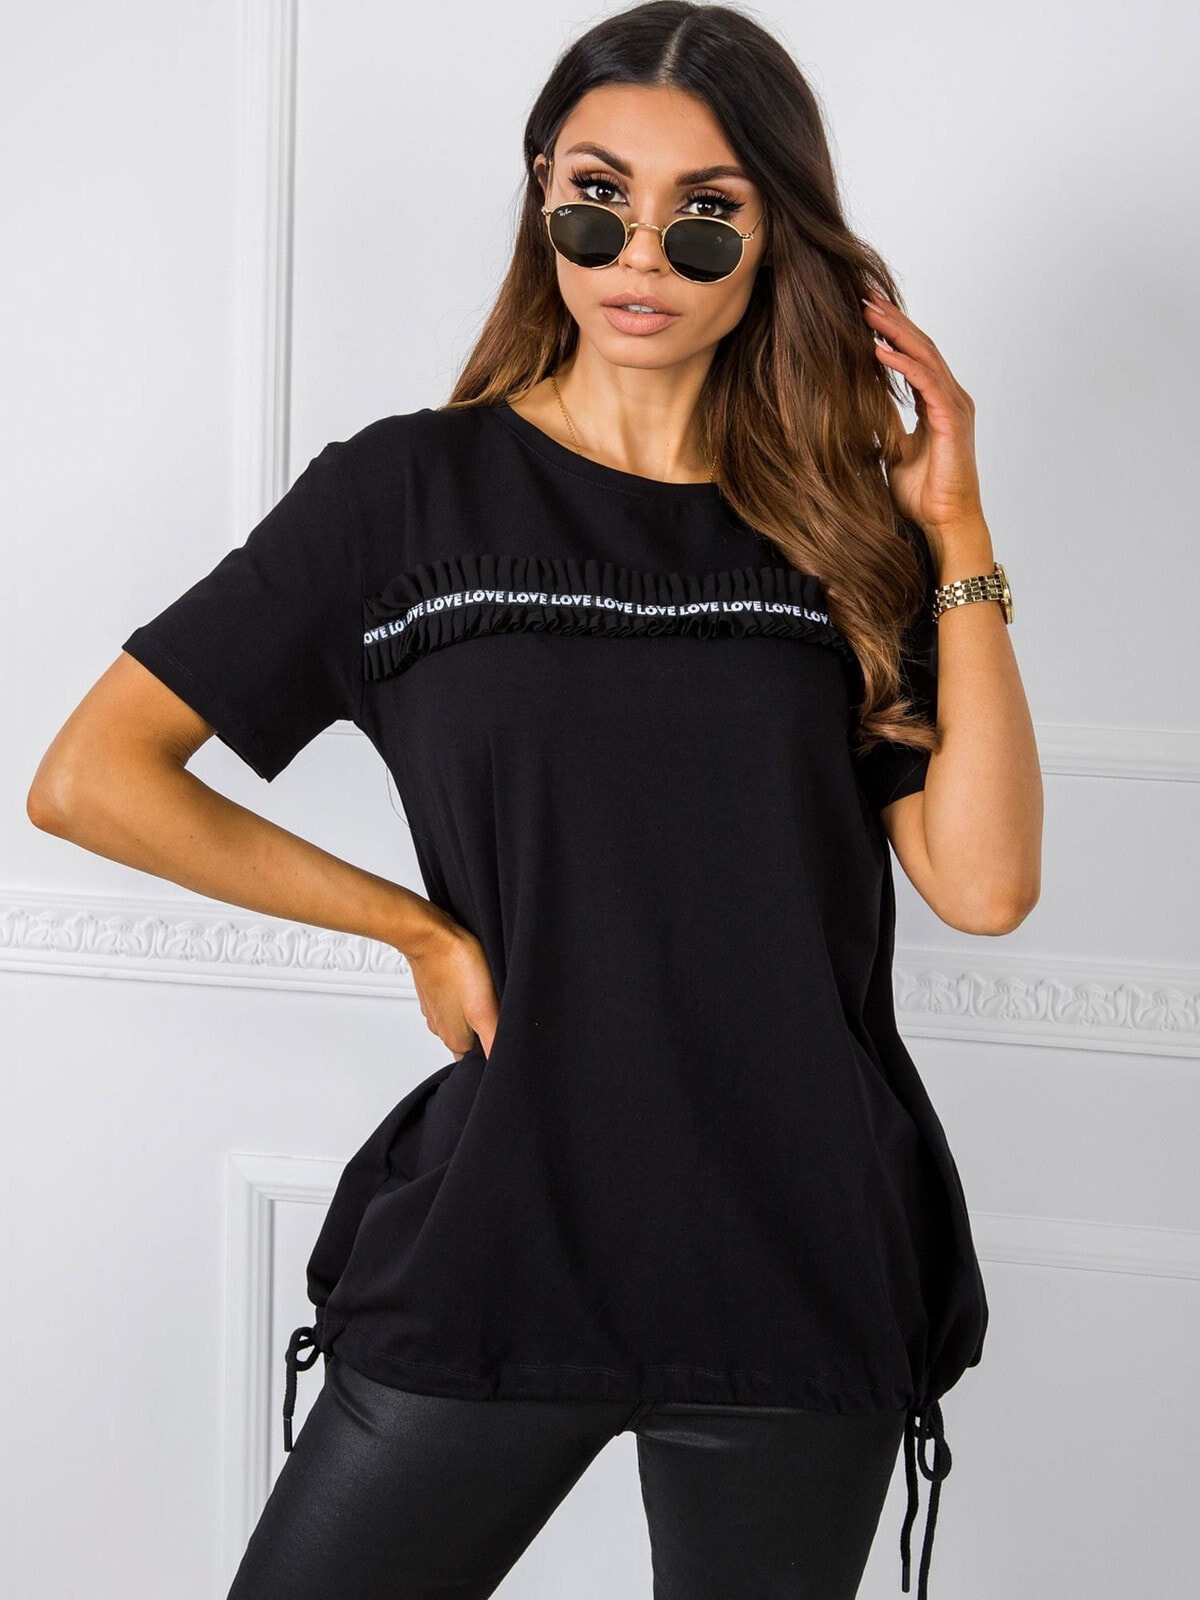 Женская блузка с коротким рукавом свободного кроя черная Factory Price